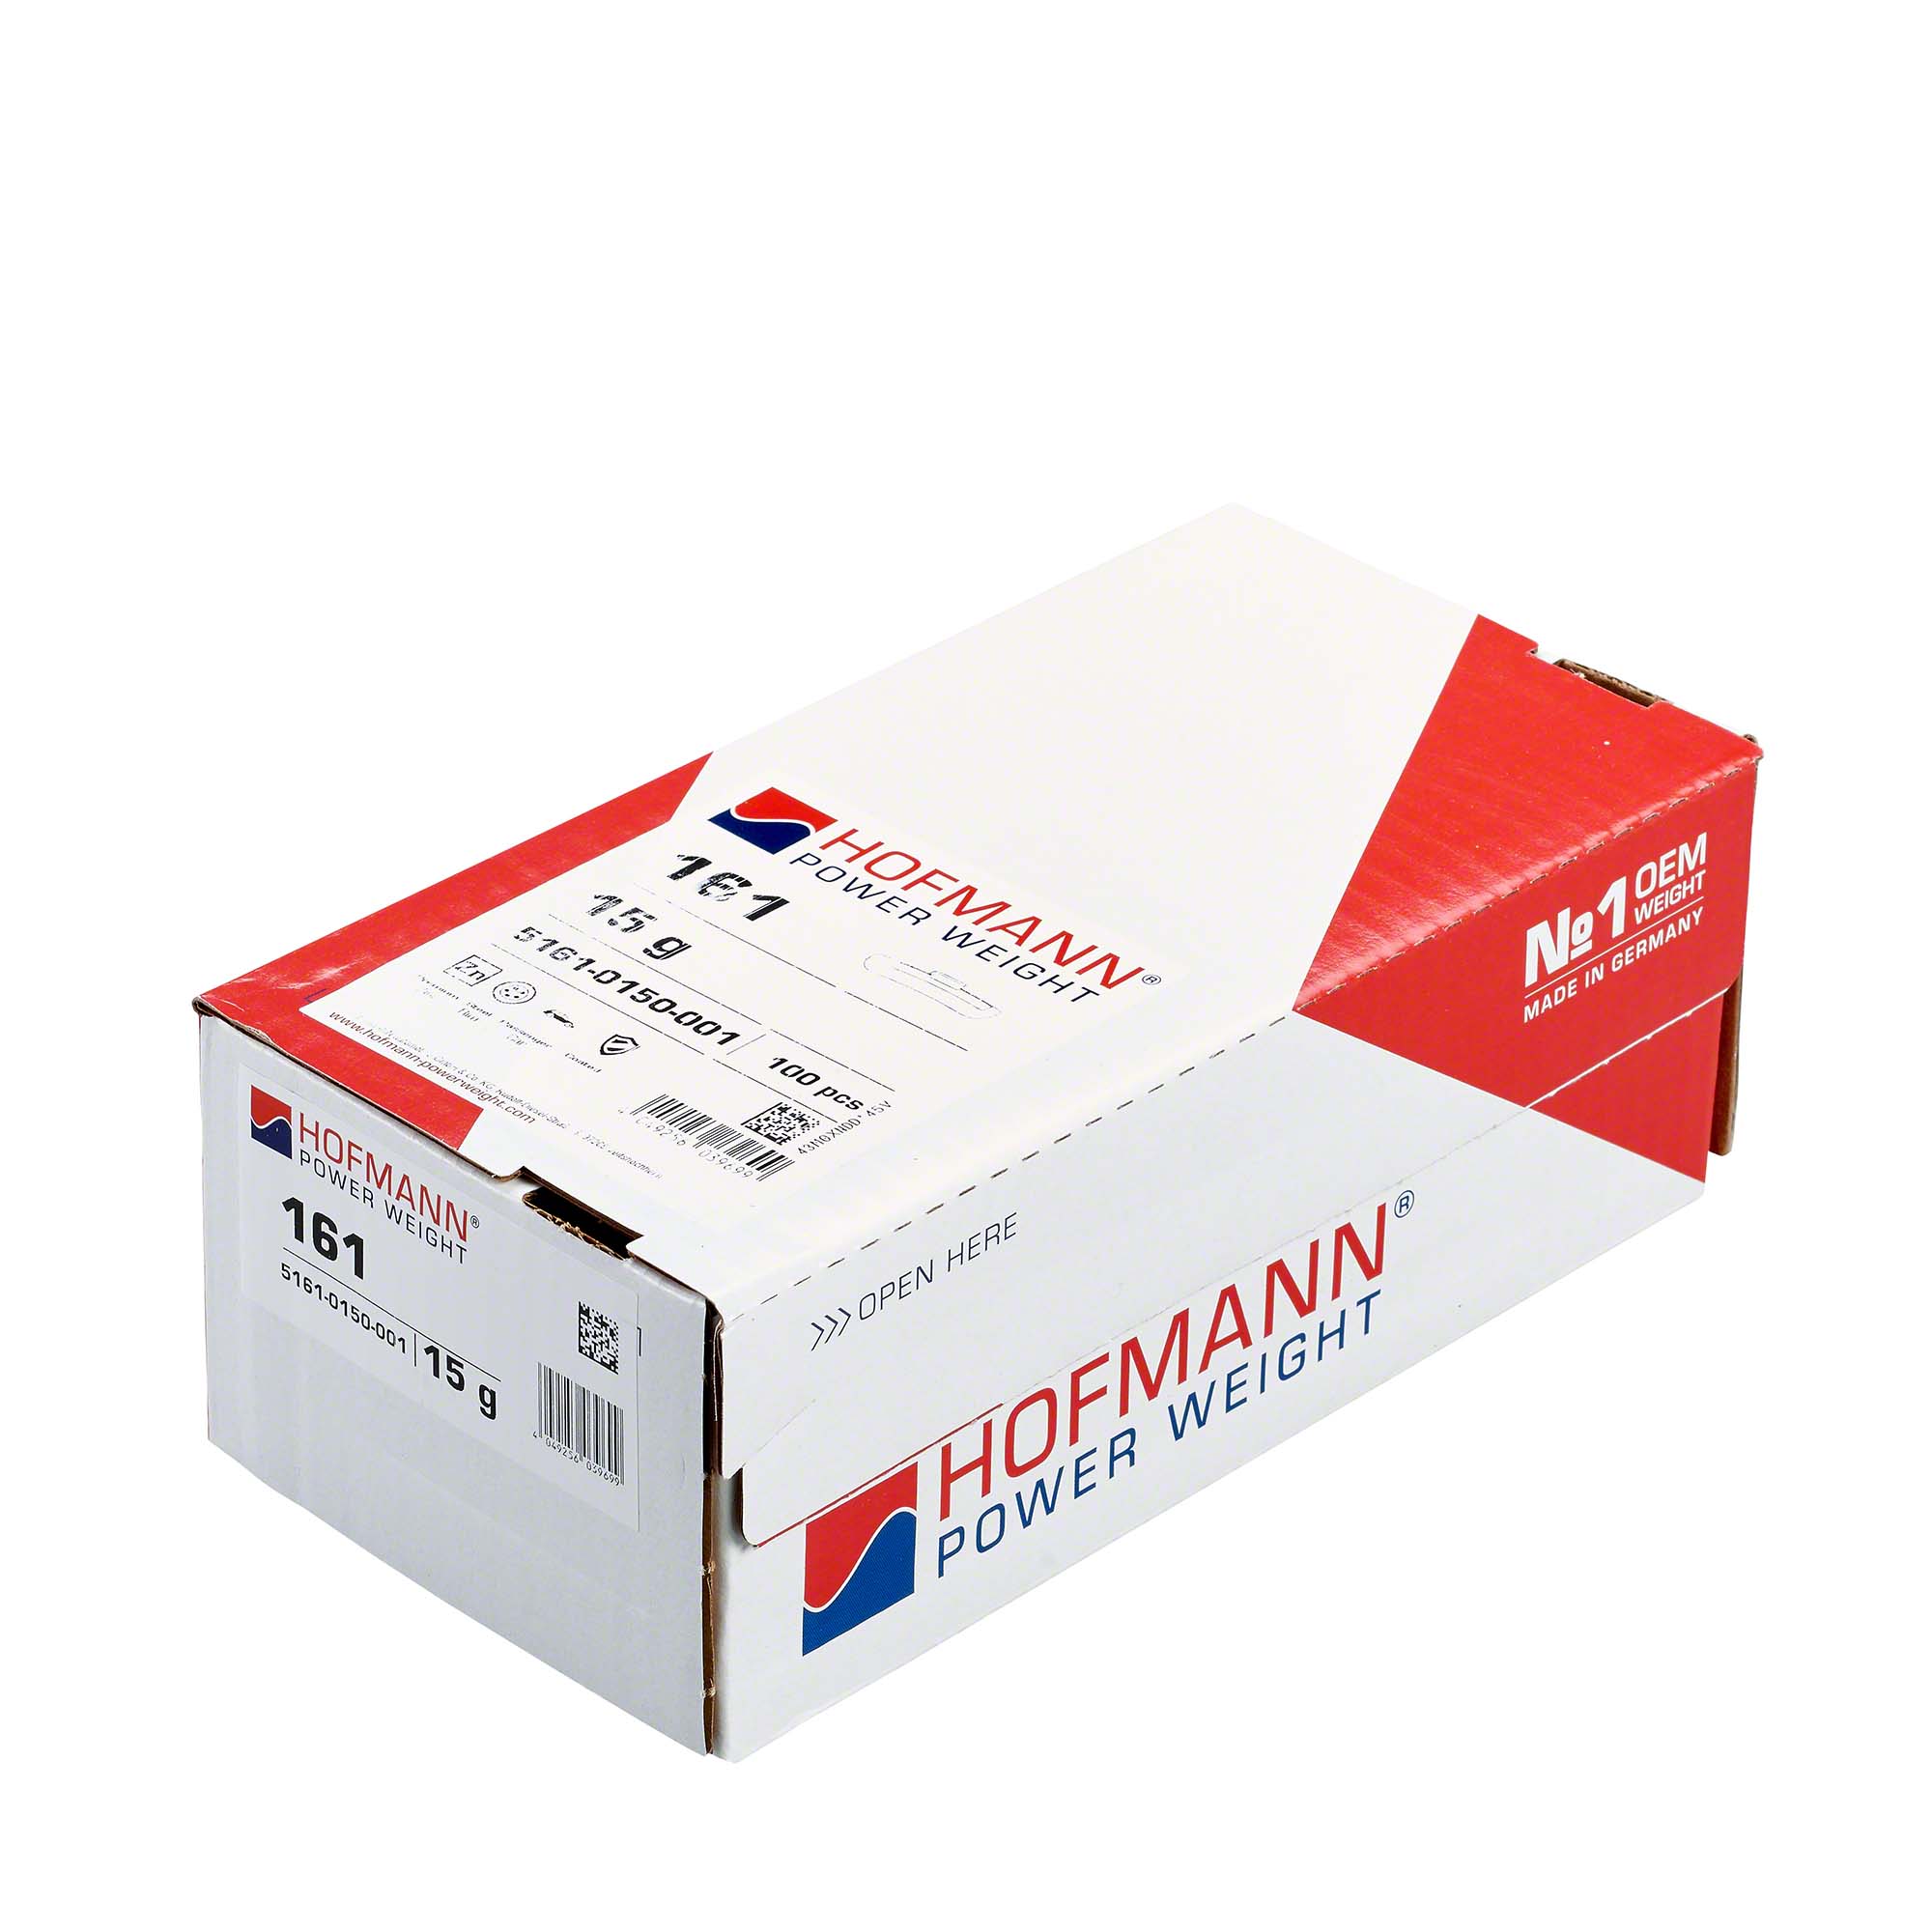 HOFMANN POWER WEIGHT-Schlaggewicht - Typ 161, 15g, Zink, silber-5161-0150-001